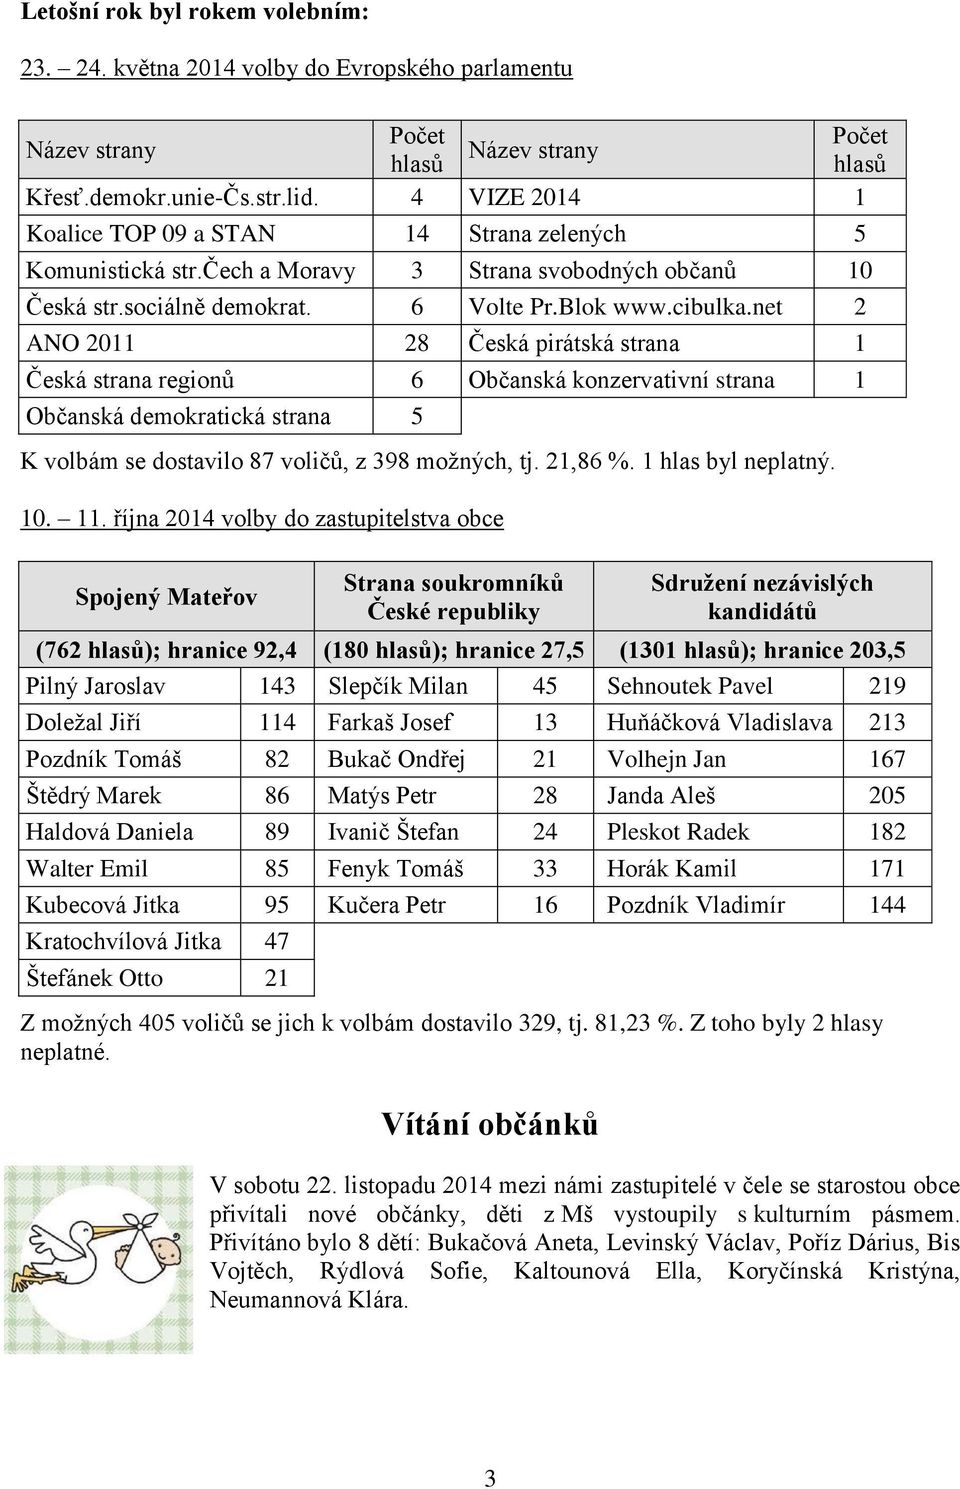 net 2 ANO 2011 28 Česká pirátská strana 1 Česká strana regionů 6 Občanská konzervativní strana 1 Občanská demokratická strana 5 K volbám se dostavilo 87 voličů, z 398 možných, tj. 21,86 %.